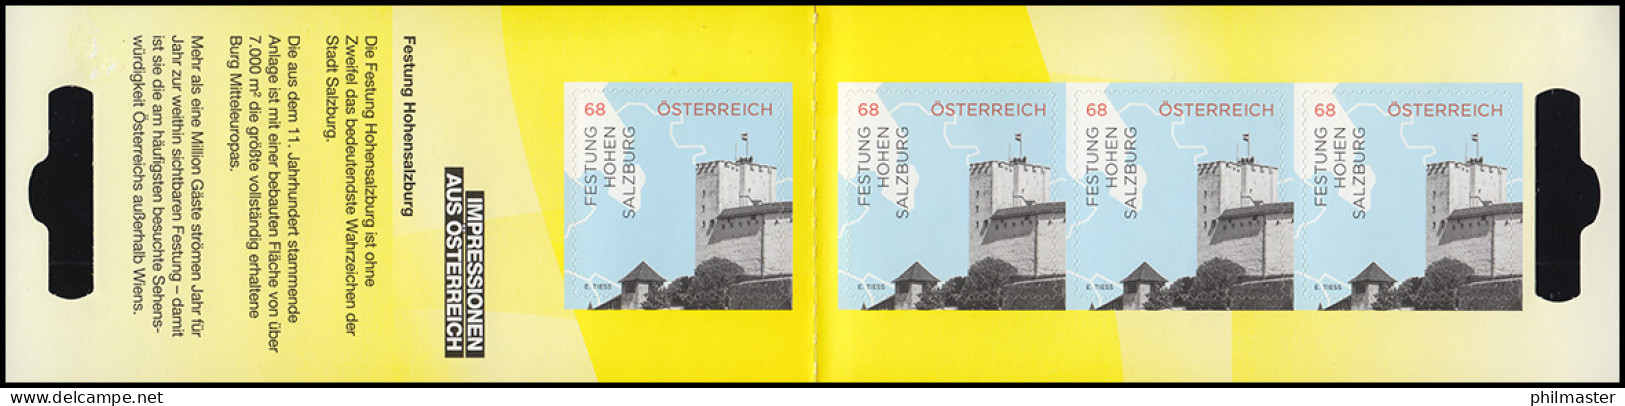 Österreich MH 0-30 Impressionen Festung Hohensalzburg, Postfrisch ** - Booklets